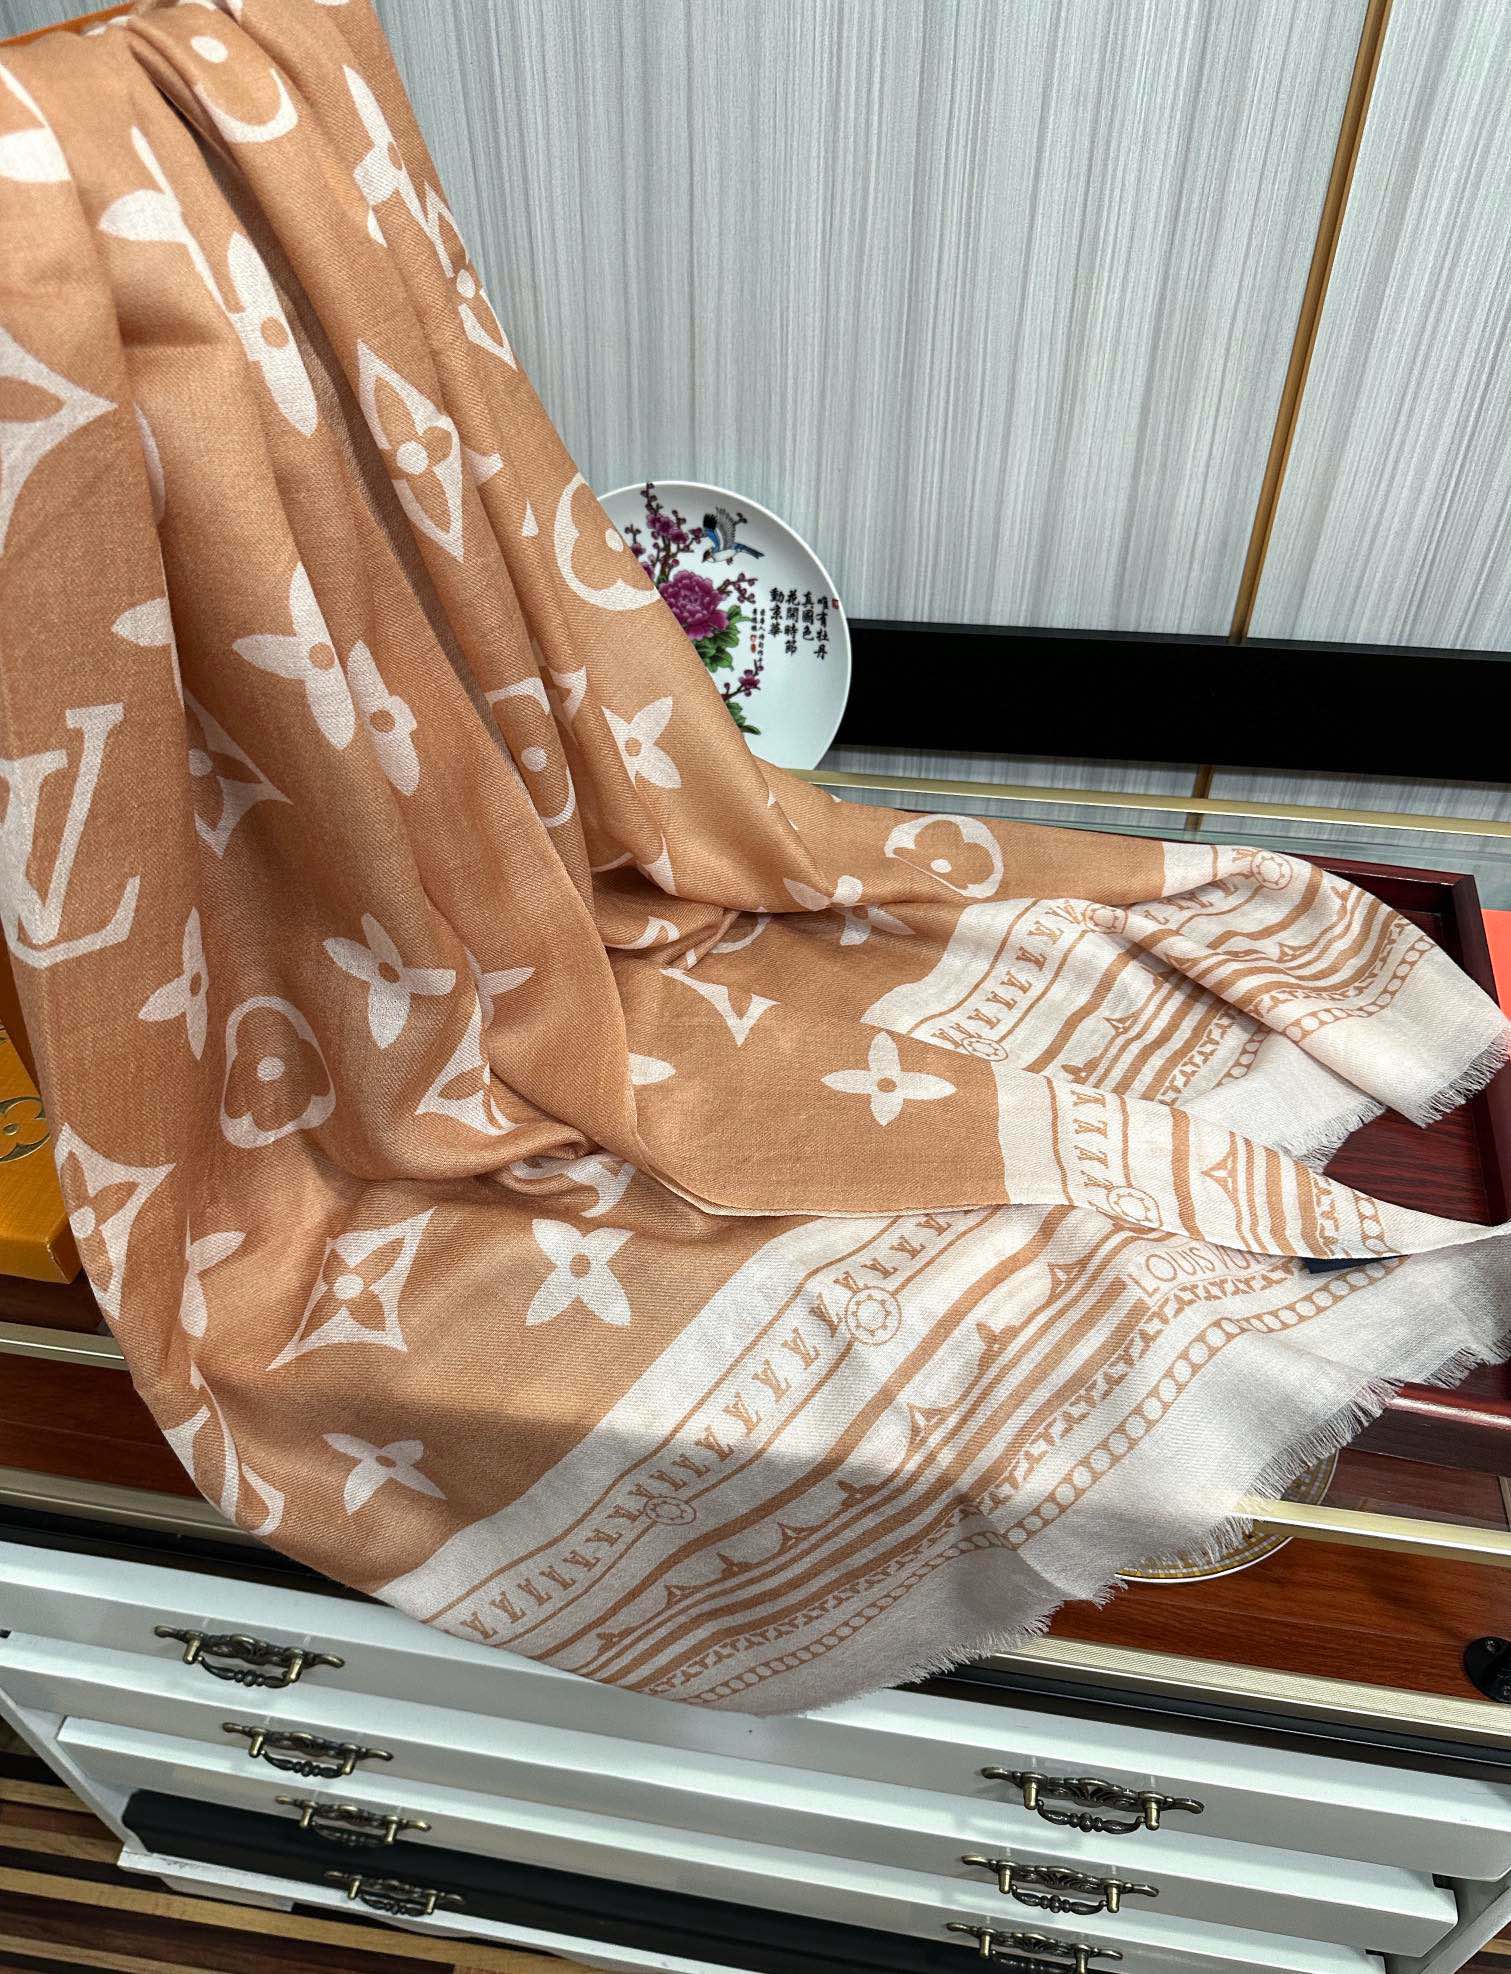 新品9L最新款️高端大气上档次羊绒长巾实物真心美披肩配以印花无论设计喷绘都是非常到位️细节都可见整个围巾